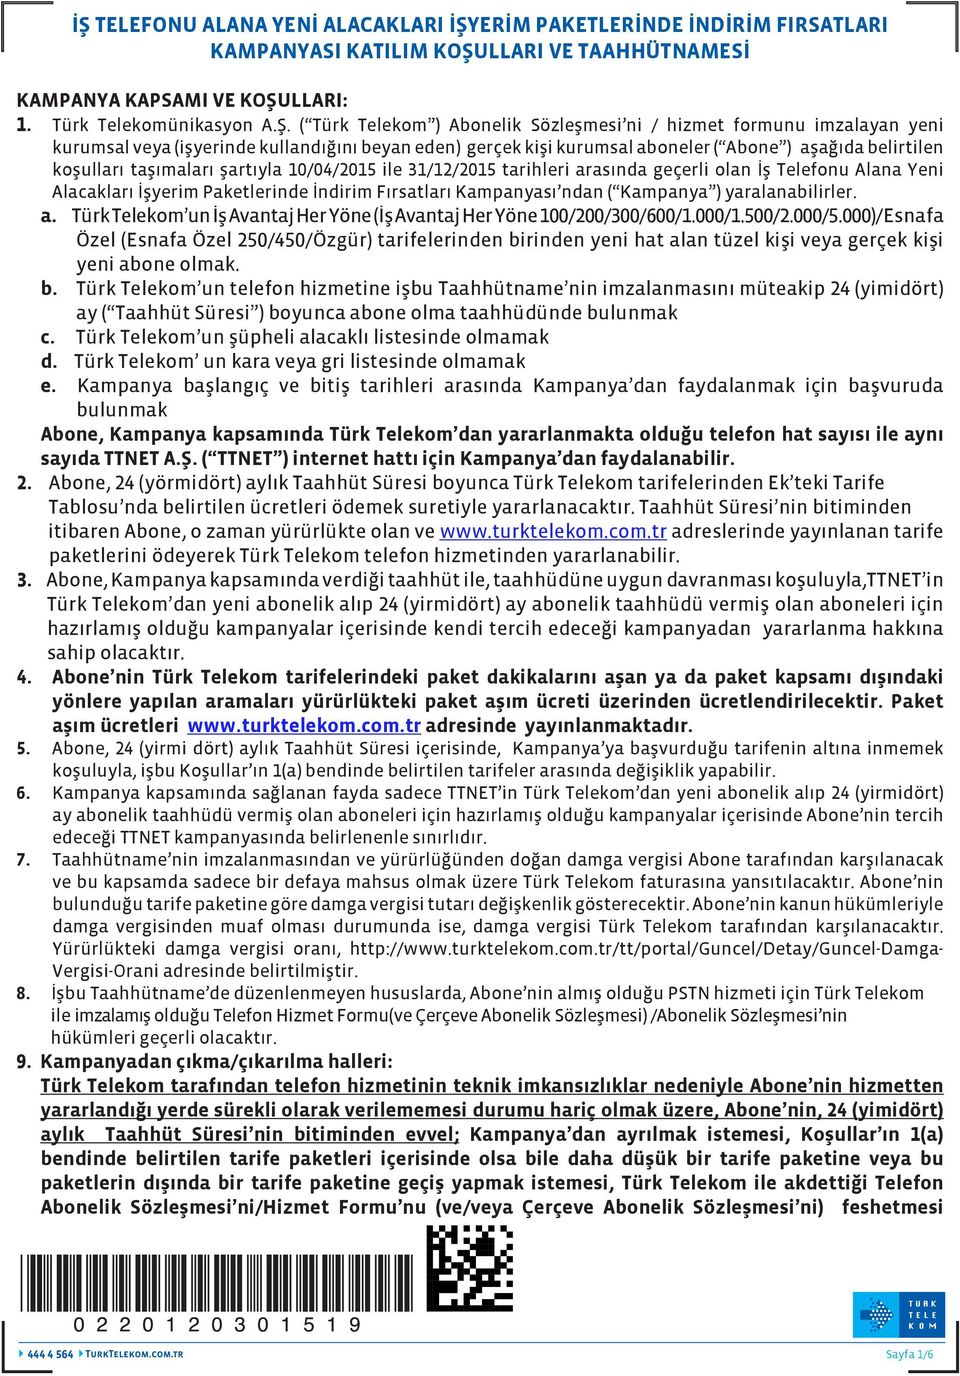 10/04/2015 ile 31/12/2015 tarihleri arasında geçerli olan İş Telefonu Alana Yeni Alacakları İşyerim Paketlerinde İndirim Fırsatları Kampanyası ndan ( Kampanya ) yaralanabilirler. a. Türk Telekom un İş Avantaj Her Yöne (İş Avantaj Her Yöne 100/200/300/600/1.